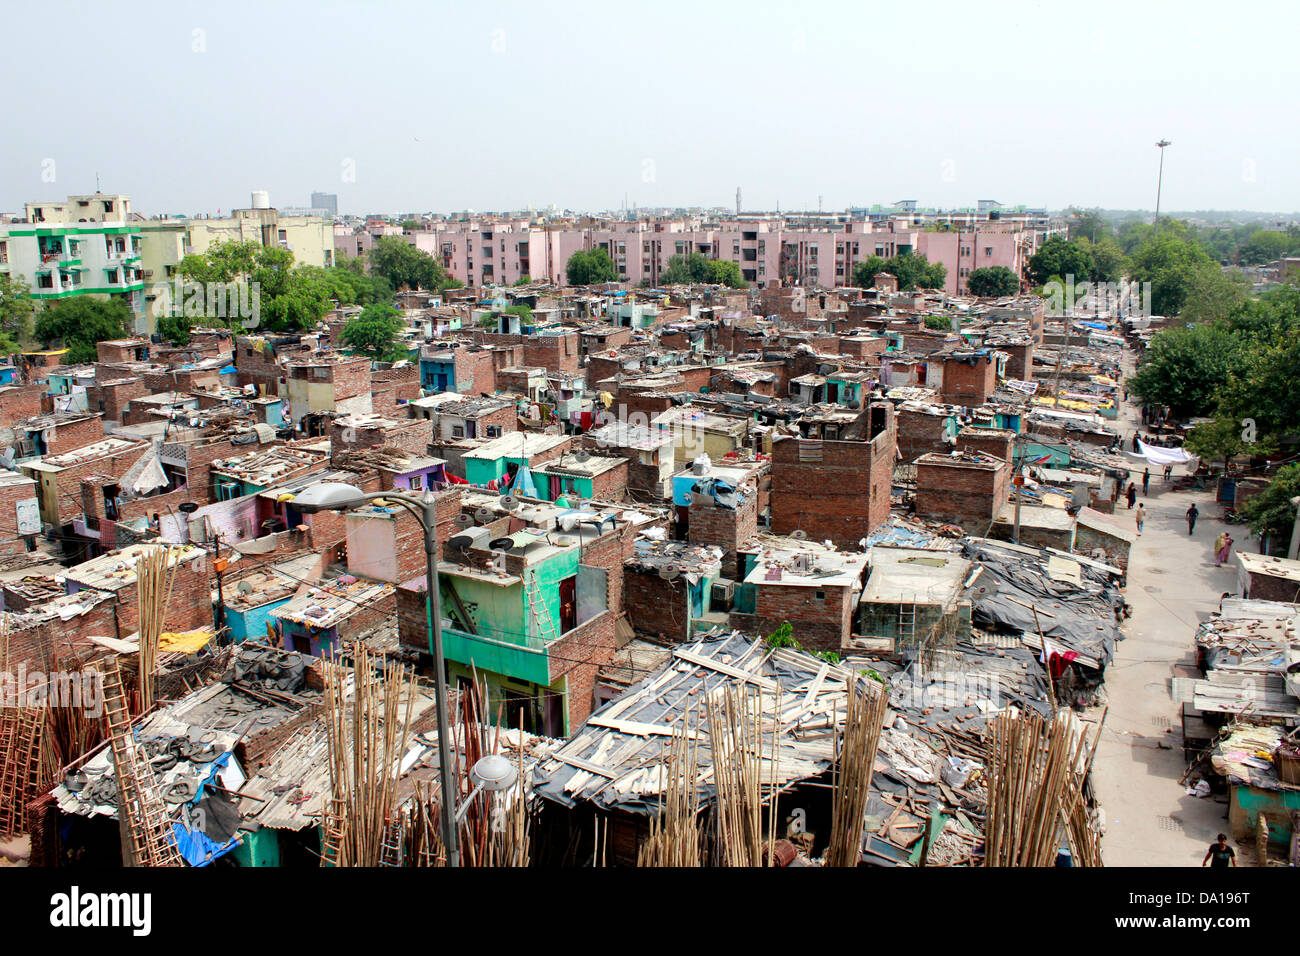 slums-in-new-delhi-india-DA196T.jpg